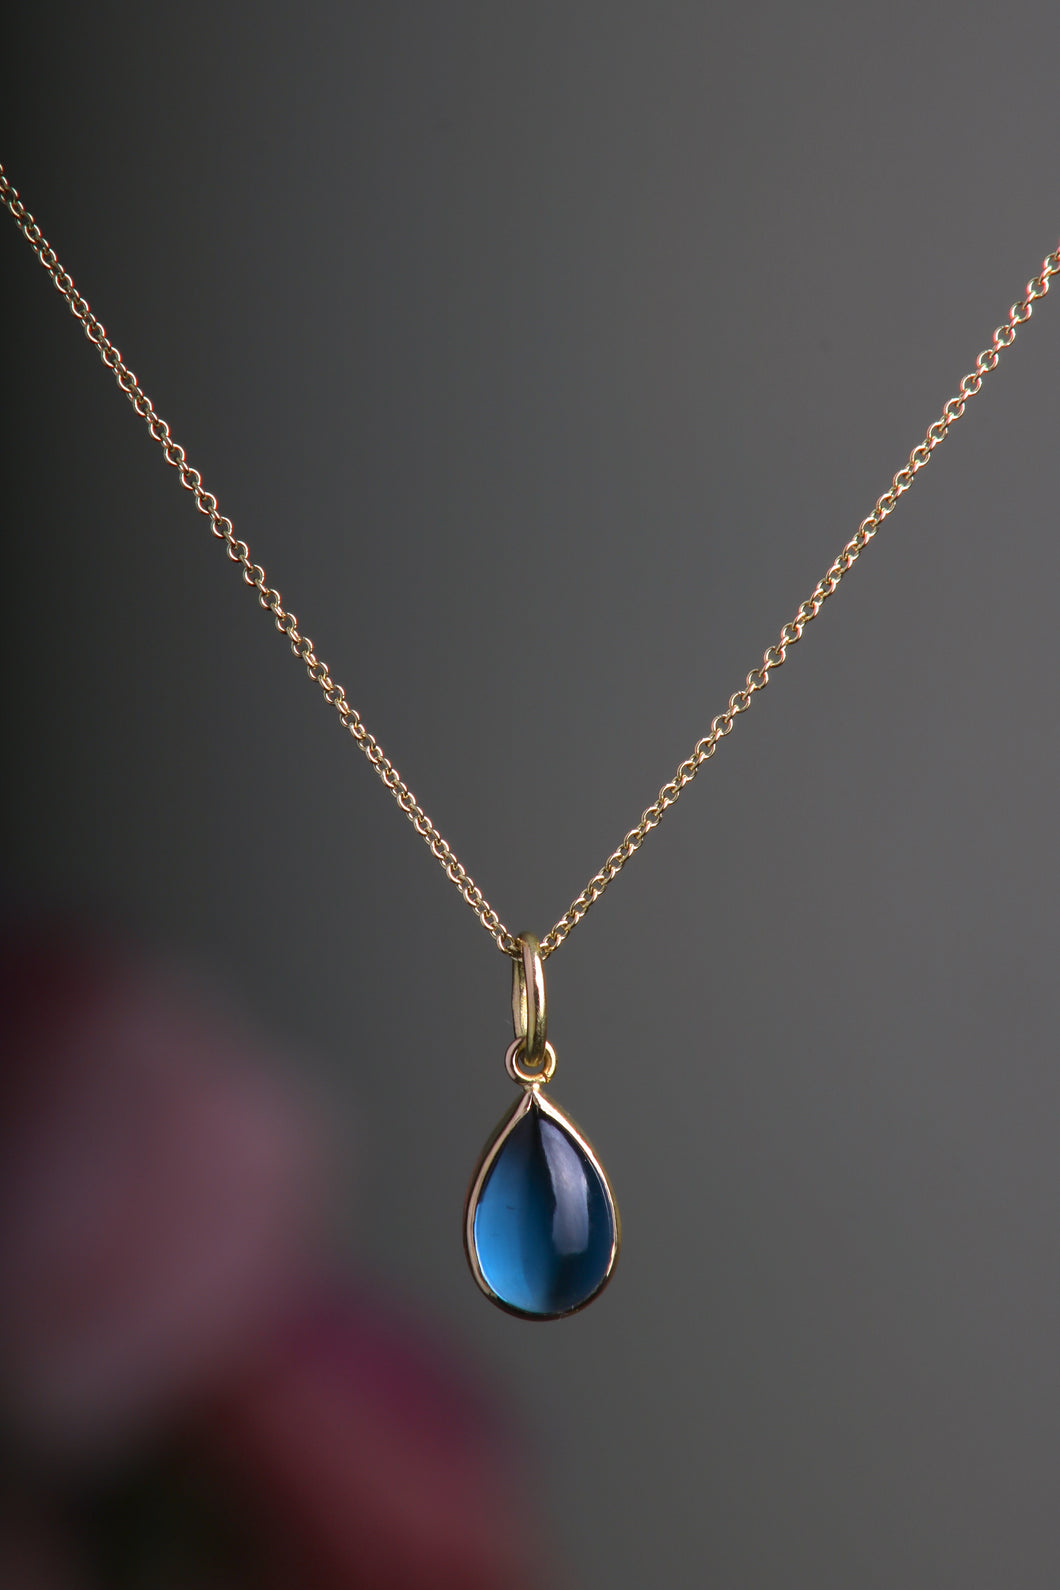 Blue Topaz Drop Pendant (08496) - Ormachea Jewelry